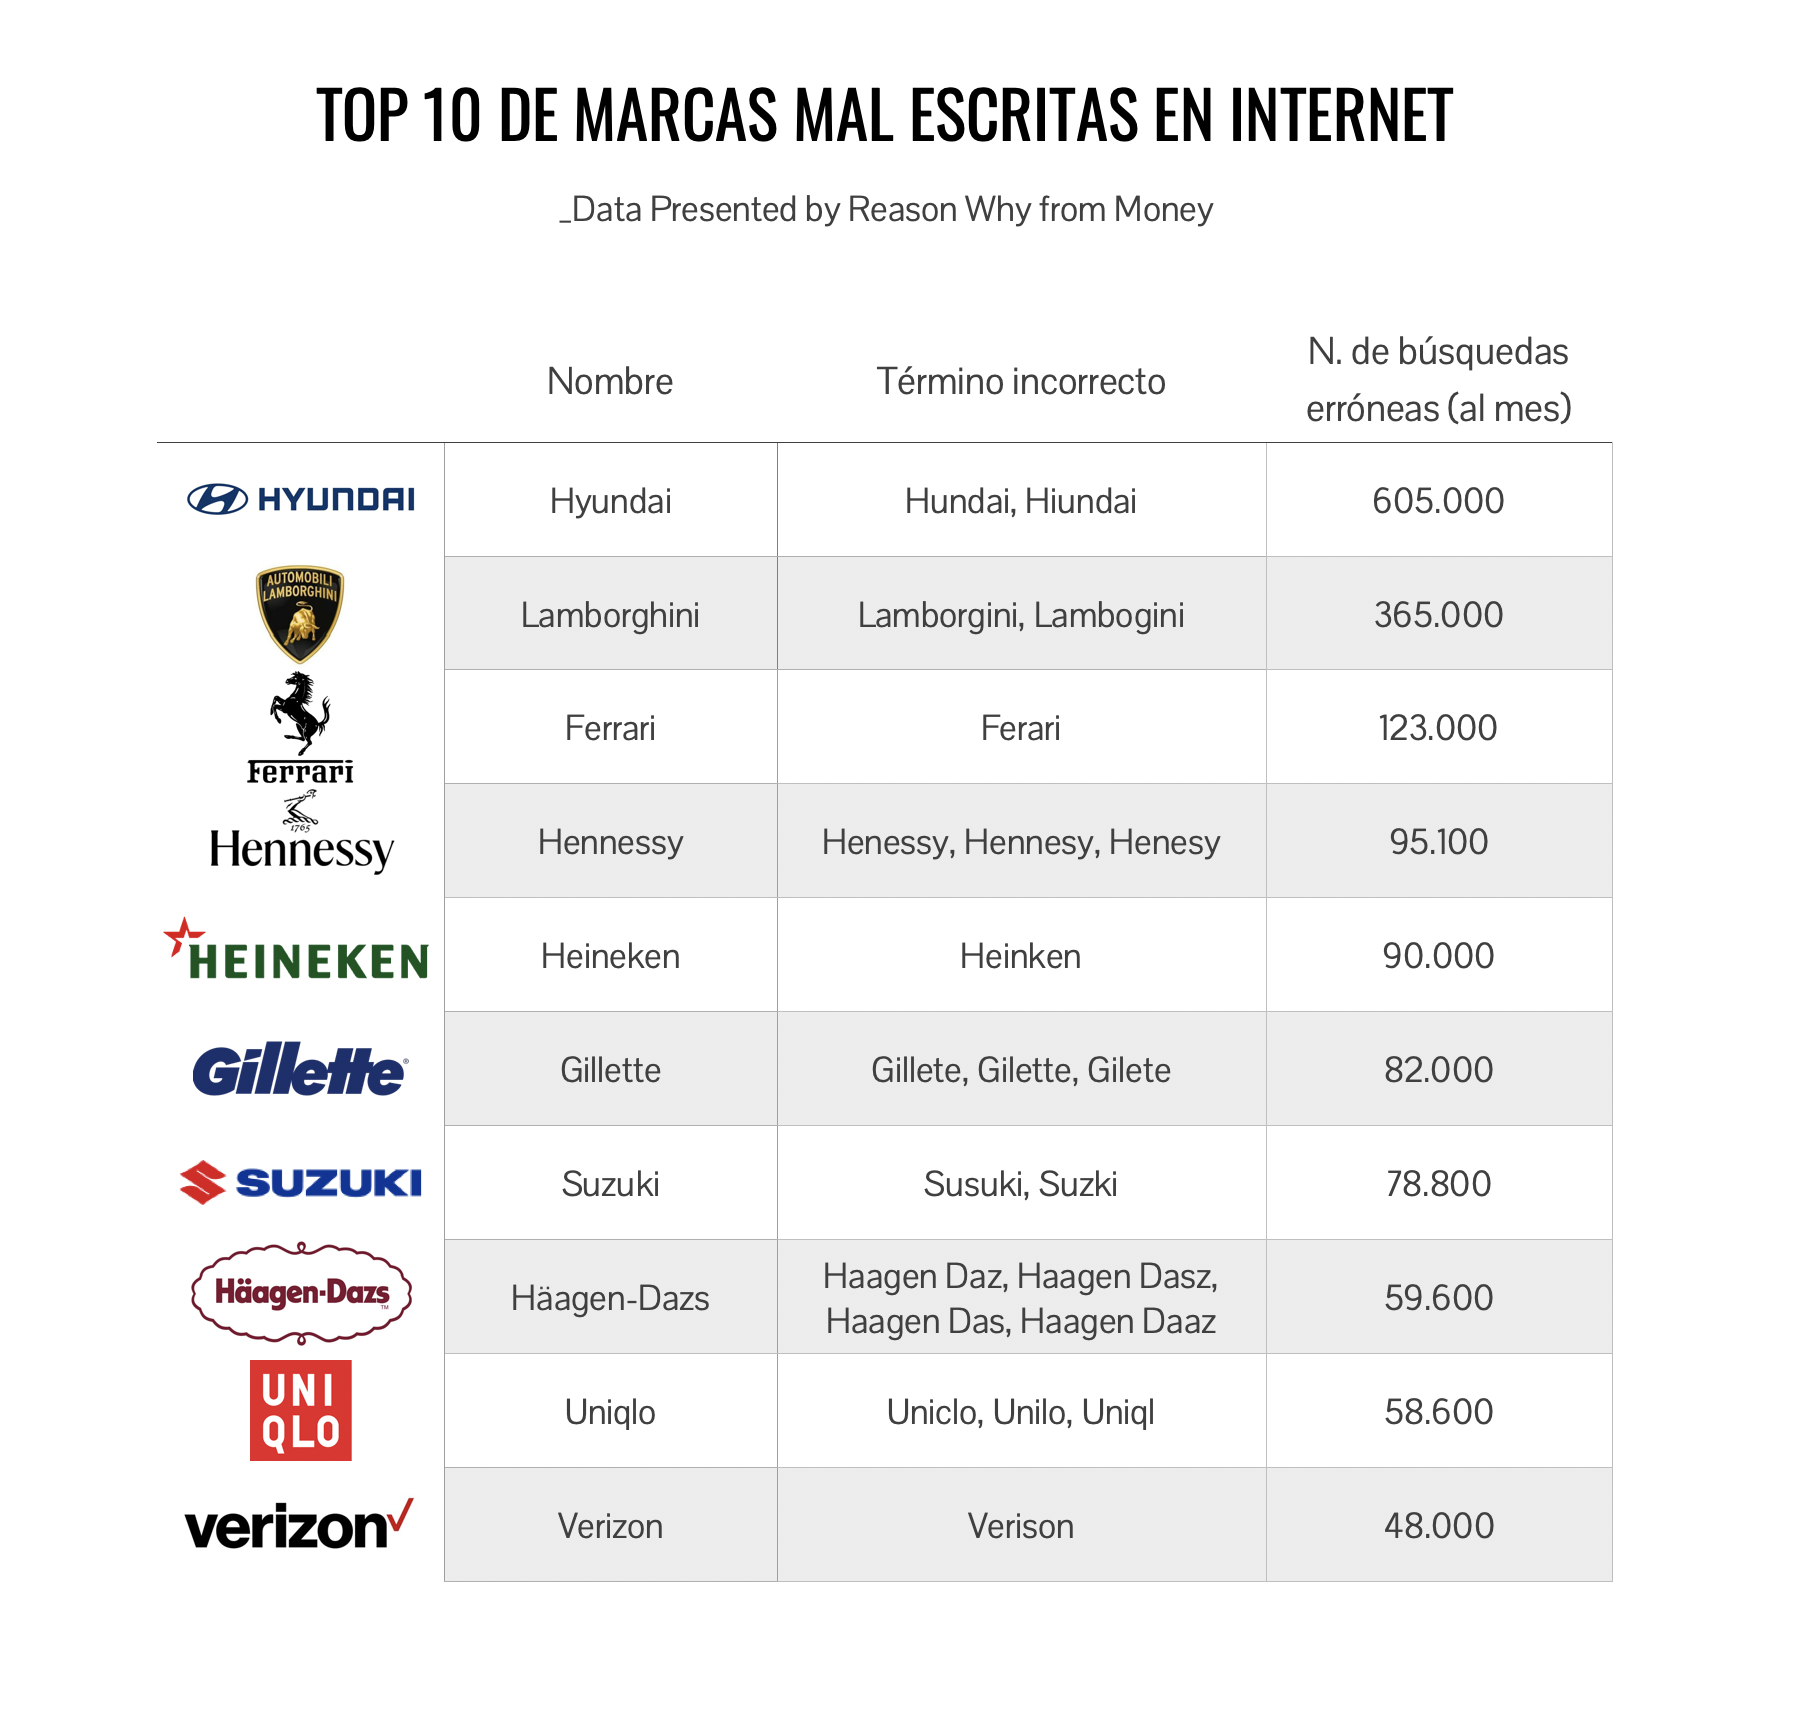 Top 10 de marcas mal escritas en búsquedas online, según Money